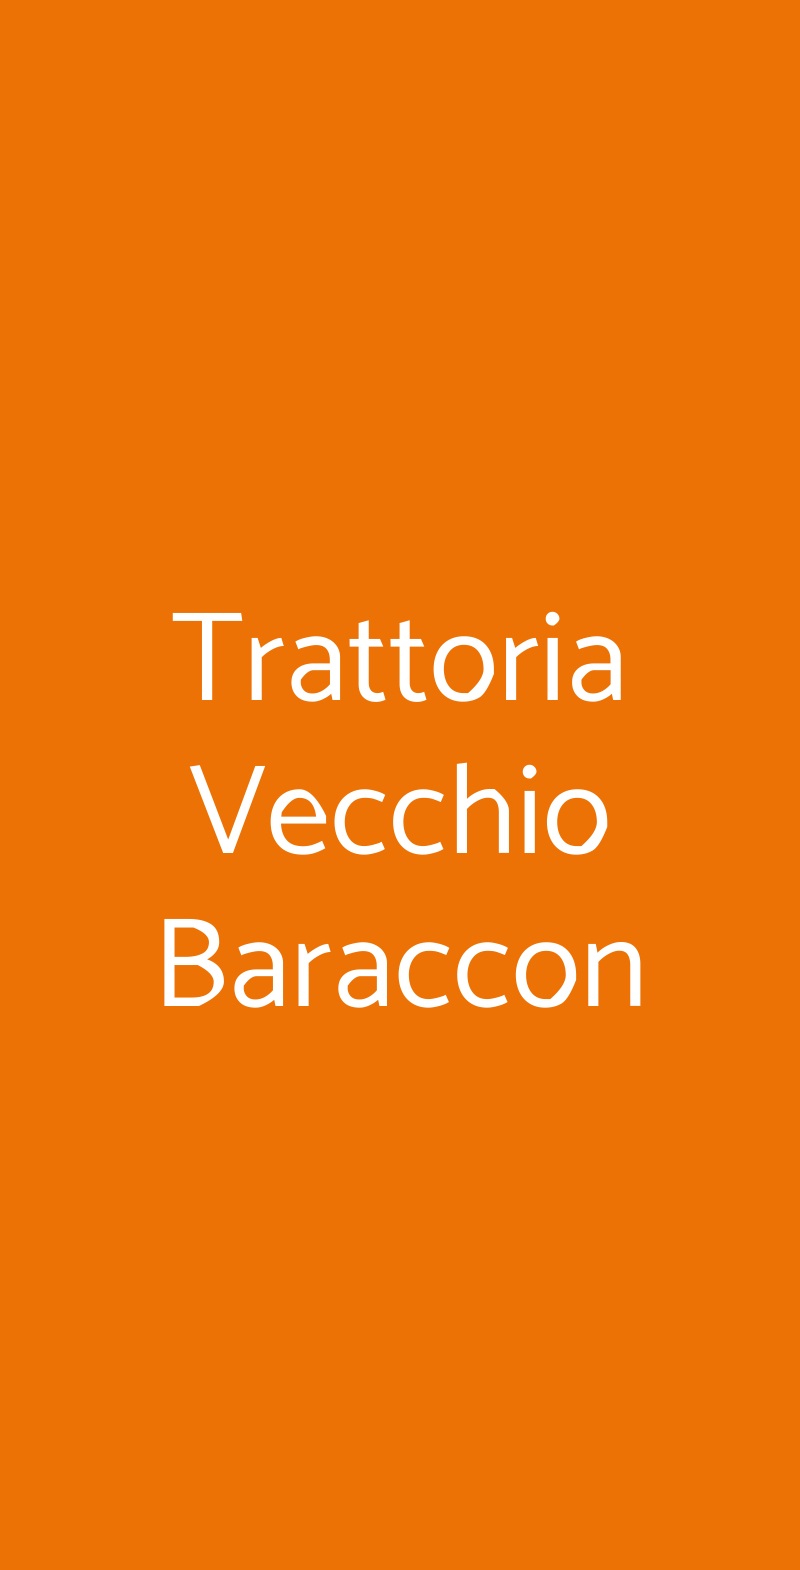 Trattoria Vecchio Baraccon Padova menù 1 pagina